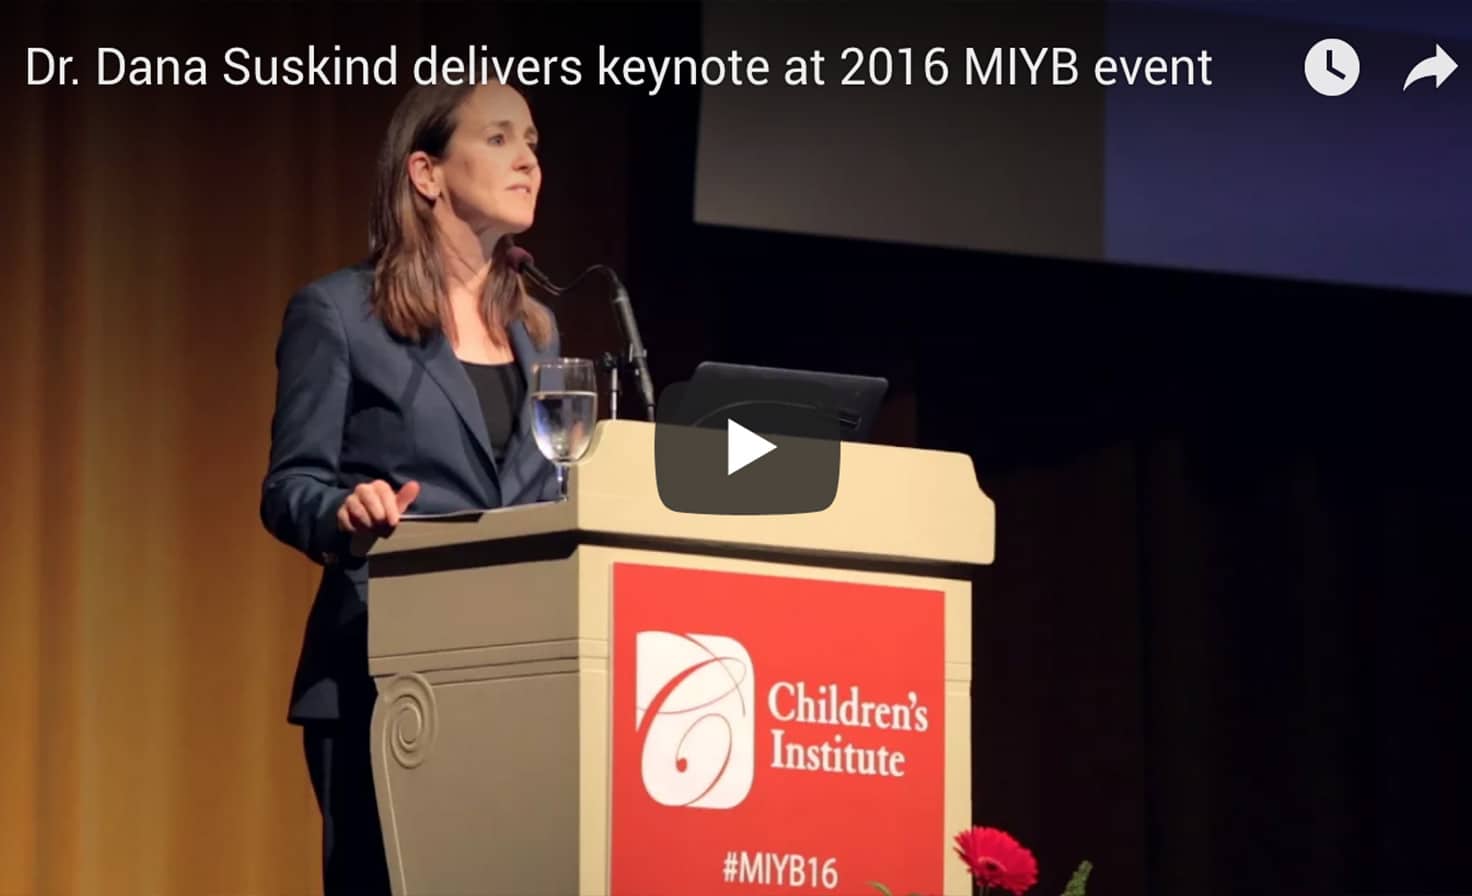 2016 MIYB: Keynote Address by Dr. Dana Suskind